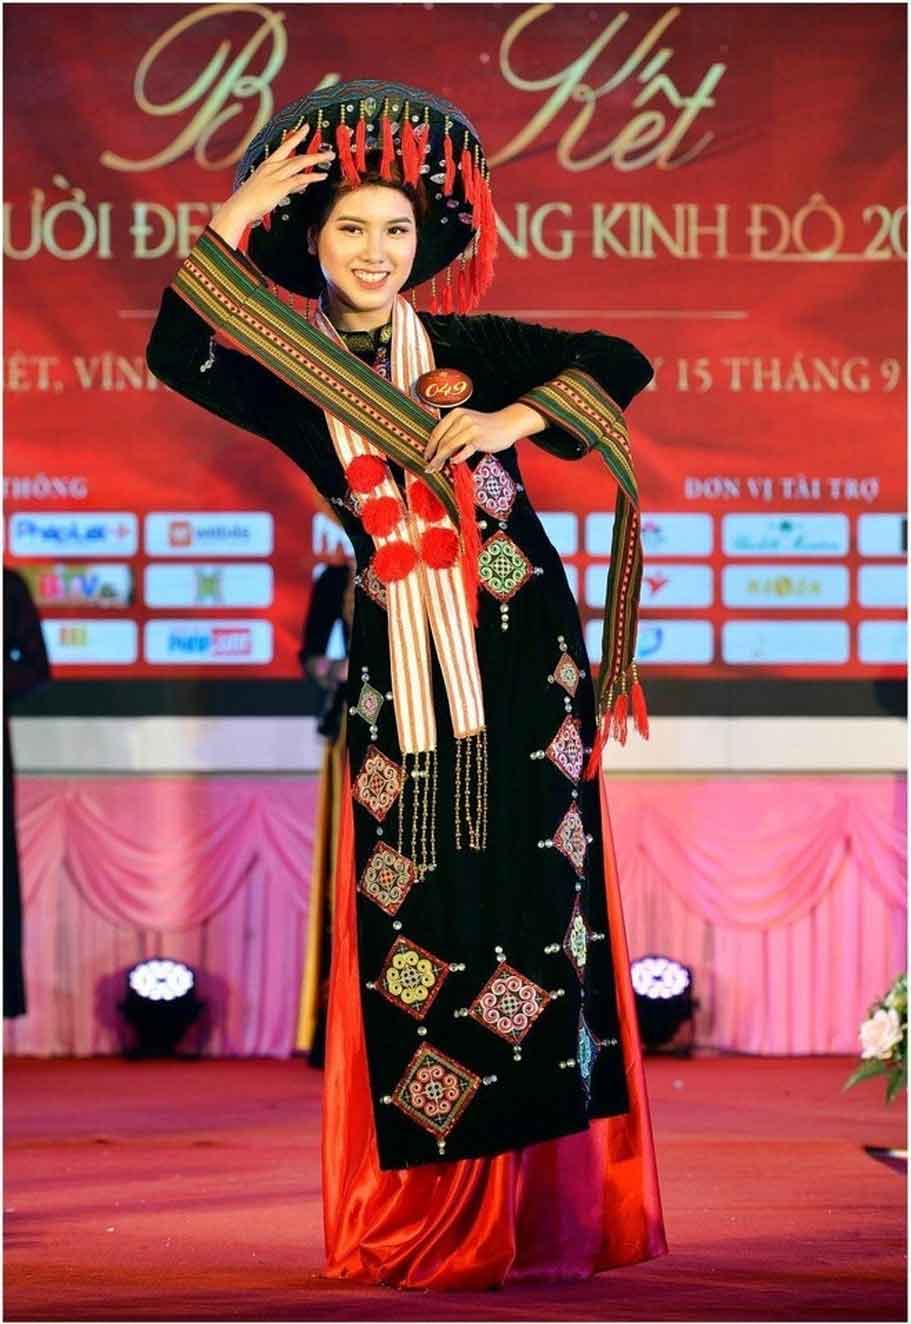 Đặng Phương Nhung (sinh năm 2000) đến từ Tuyên Quang, là sinh viên của Đại học Tài chính - Ngân hàng Hà Nội. Cô cao 1m68, số đo ba vòng 80 - 61 - 92 cm. Năm 2019, cô cùng lúc đoạt hai giải: Hoa khôi Đại học Tài Chính - Ngân hàng và Hoa khôi Kinh đô Việt Nam. Cô đam mê nghệ thuật, thích nhảy hiện đại lẫn múa truyền thống.